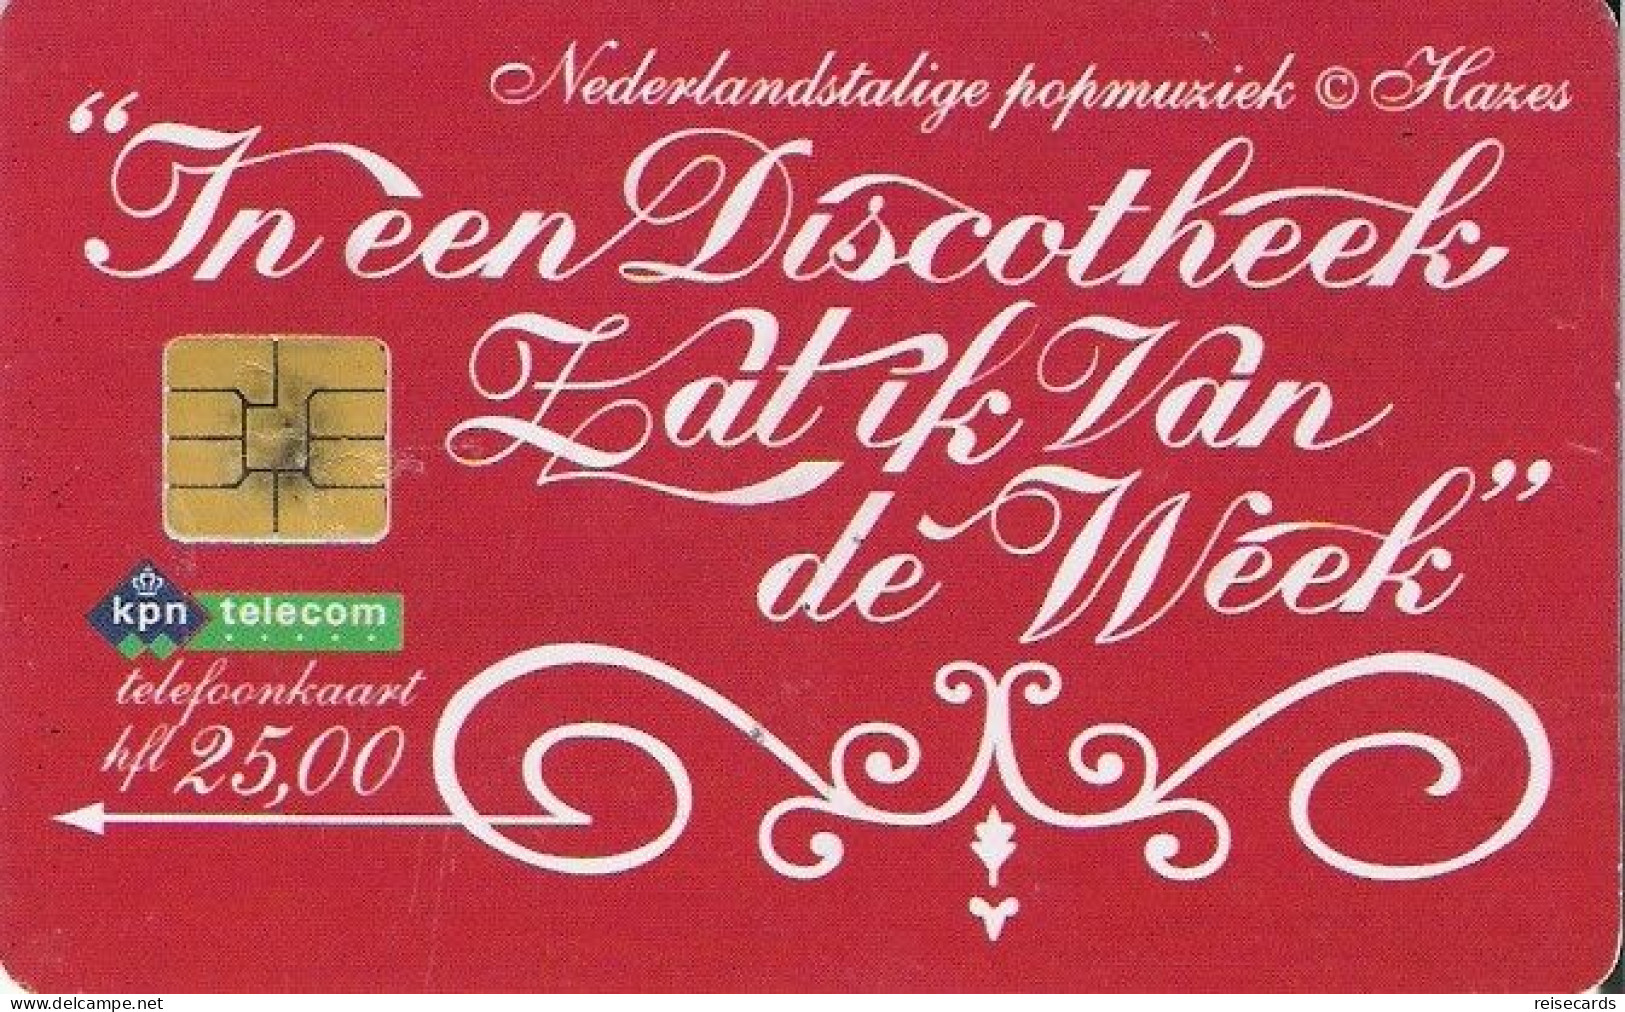 Netherlands: Kpn Telecom - 1999 In Een Discotheek - Openbaar